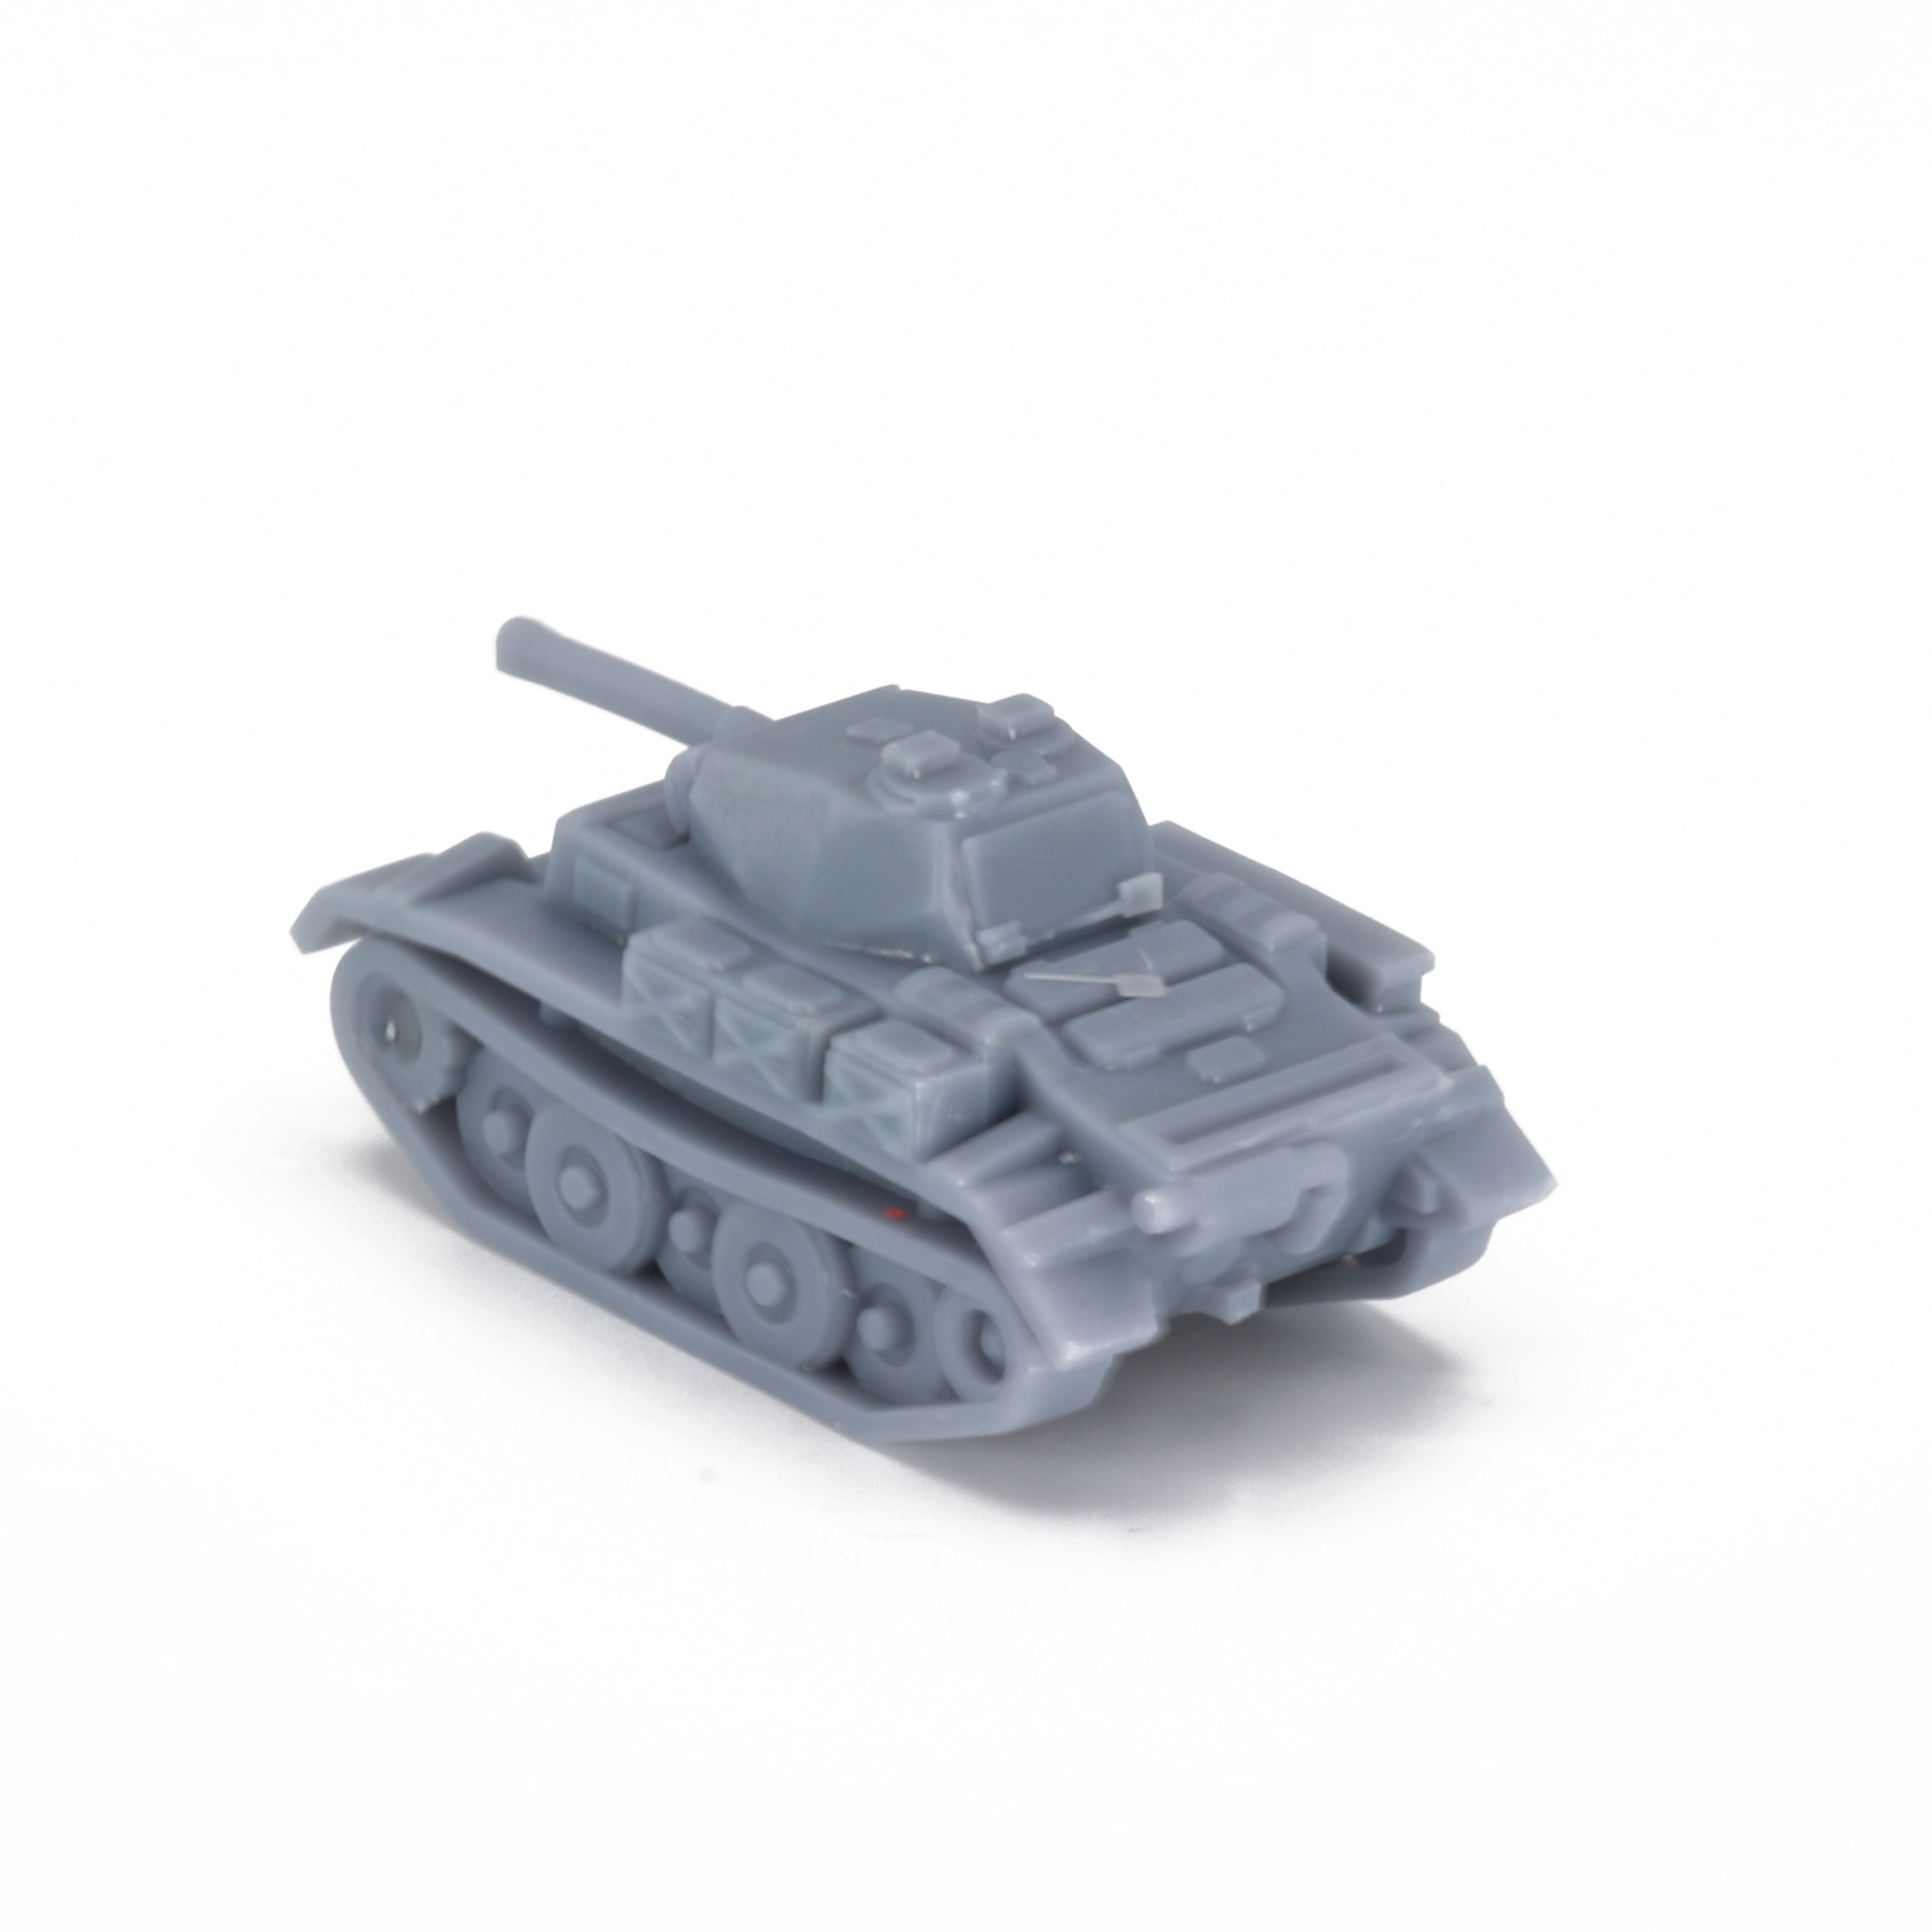 Panzer II (Luchs)